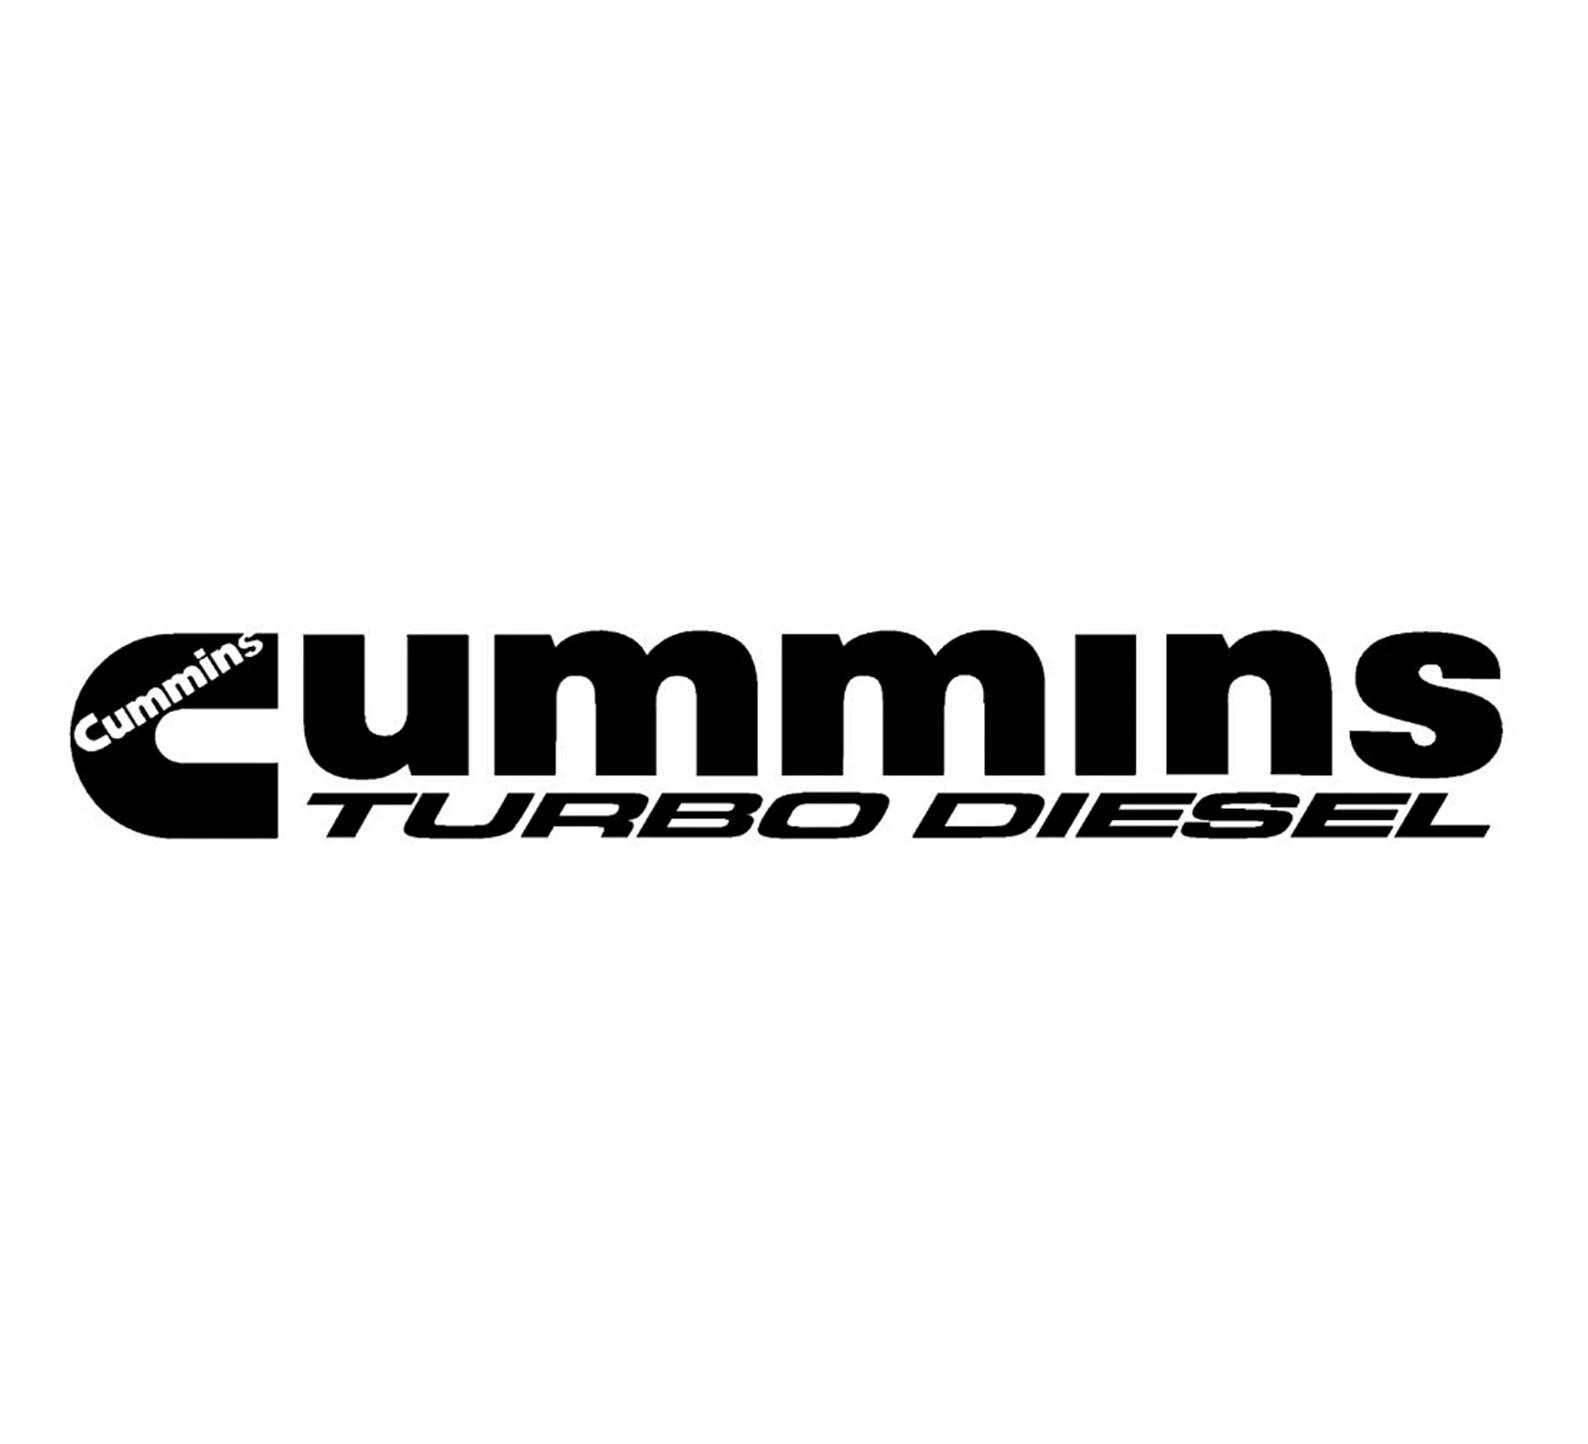 Turbo Diesel Cummins Wallpaper